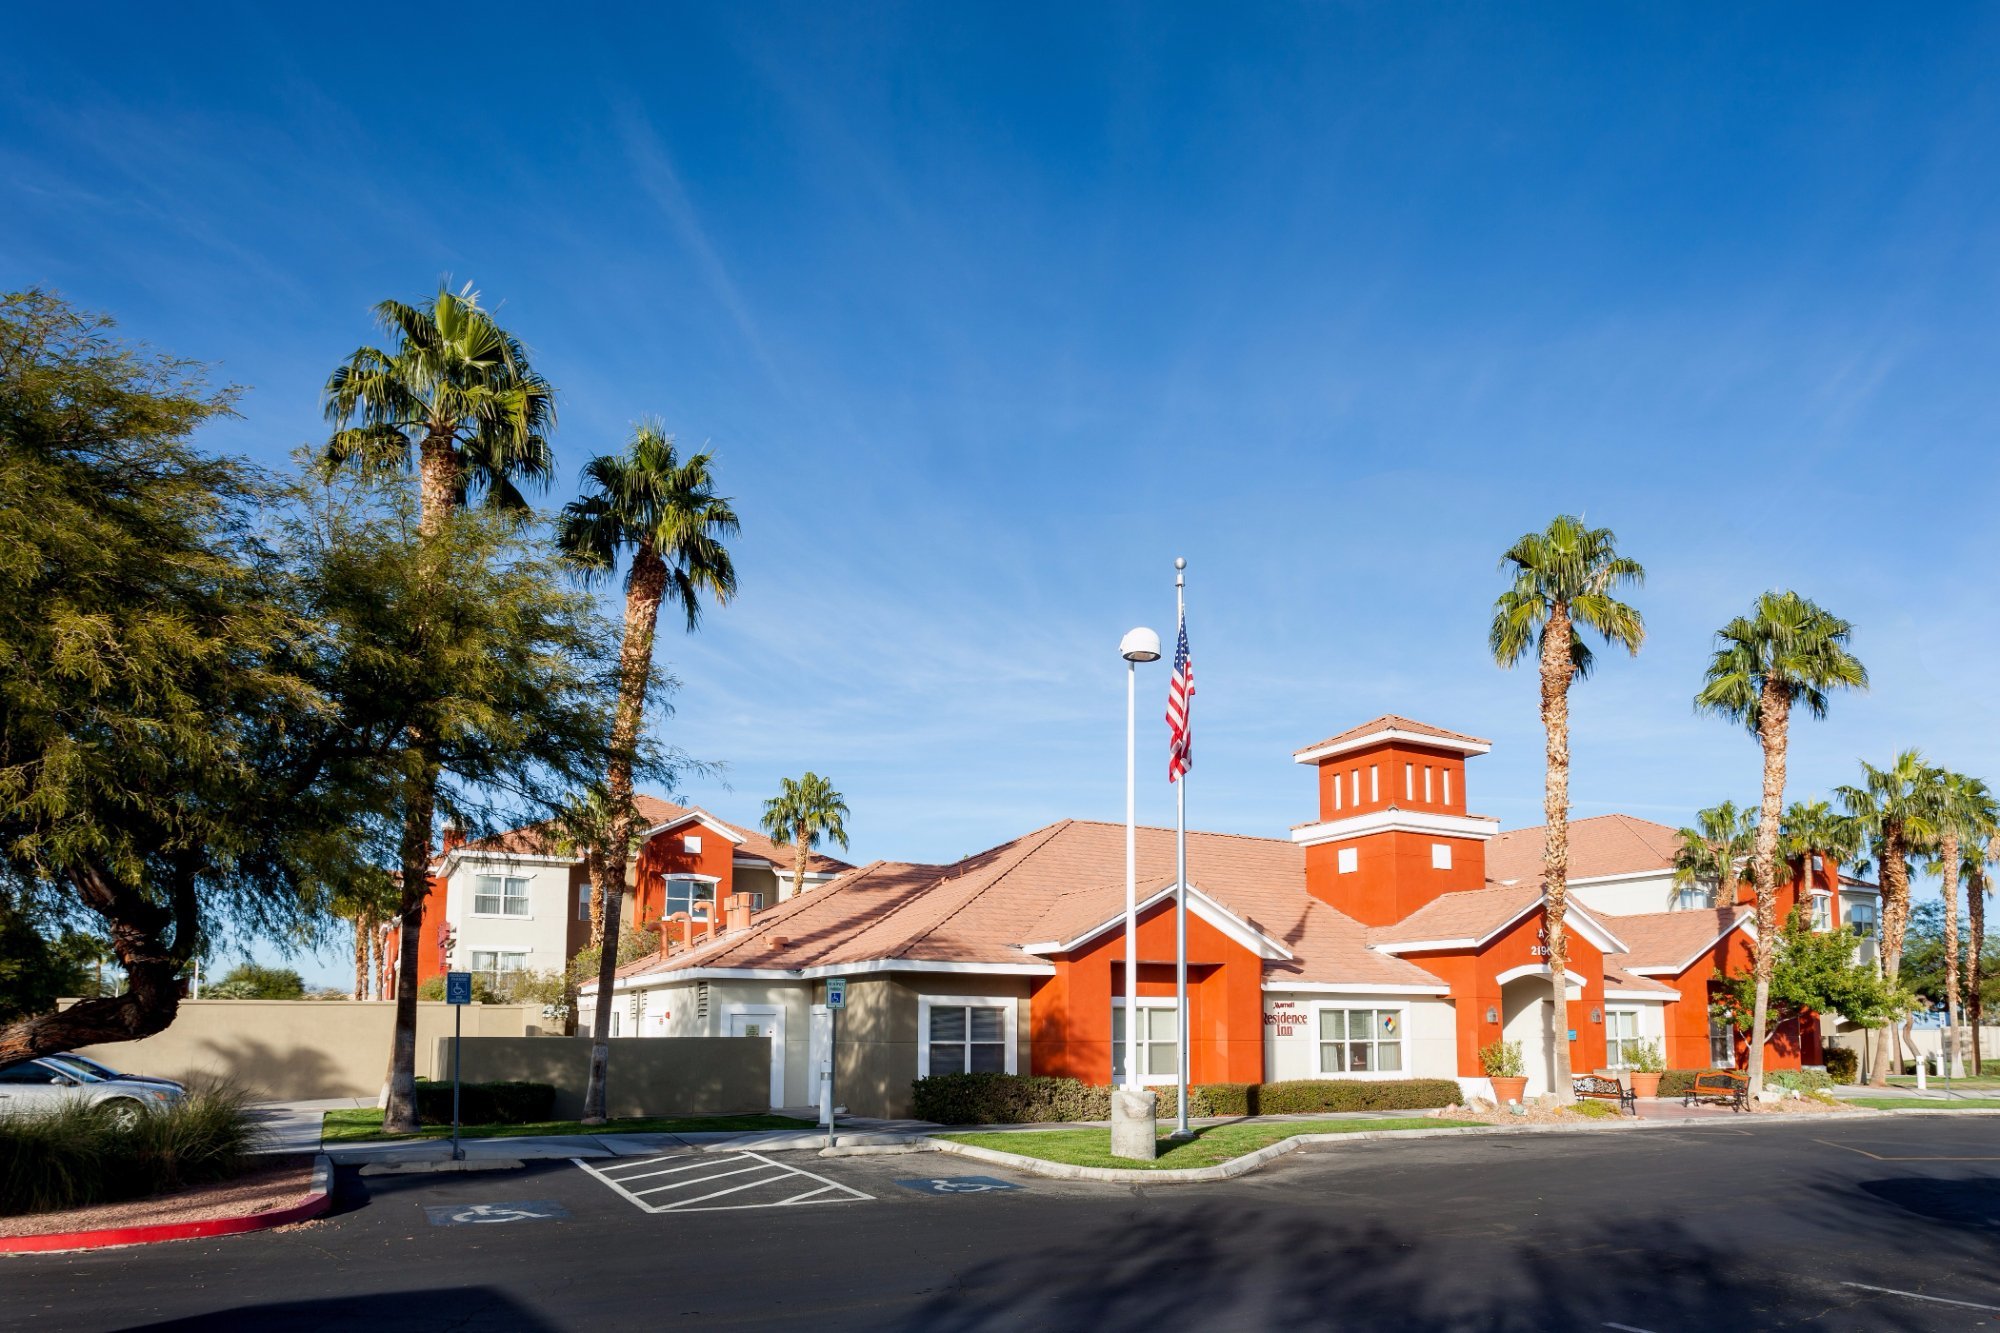 Photo of Residence Inn by Marriott Las Vegas Henderson/Green Valley, Henderson, NV